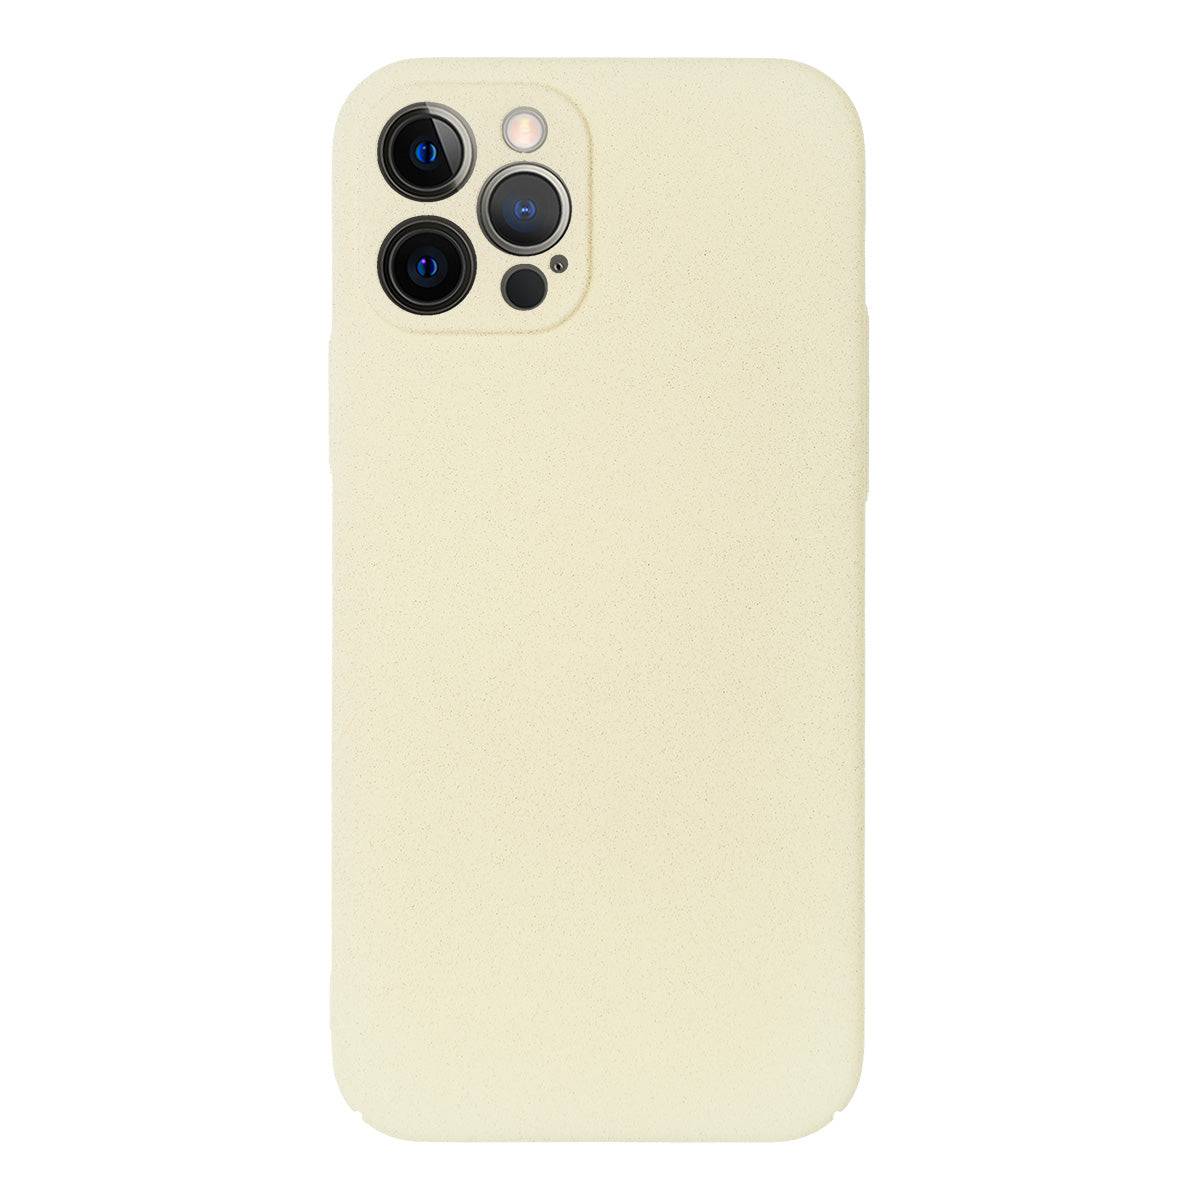 [NEW] Ultra slim & light sand matt tough iPhone Case - iiCase